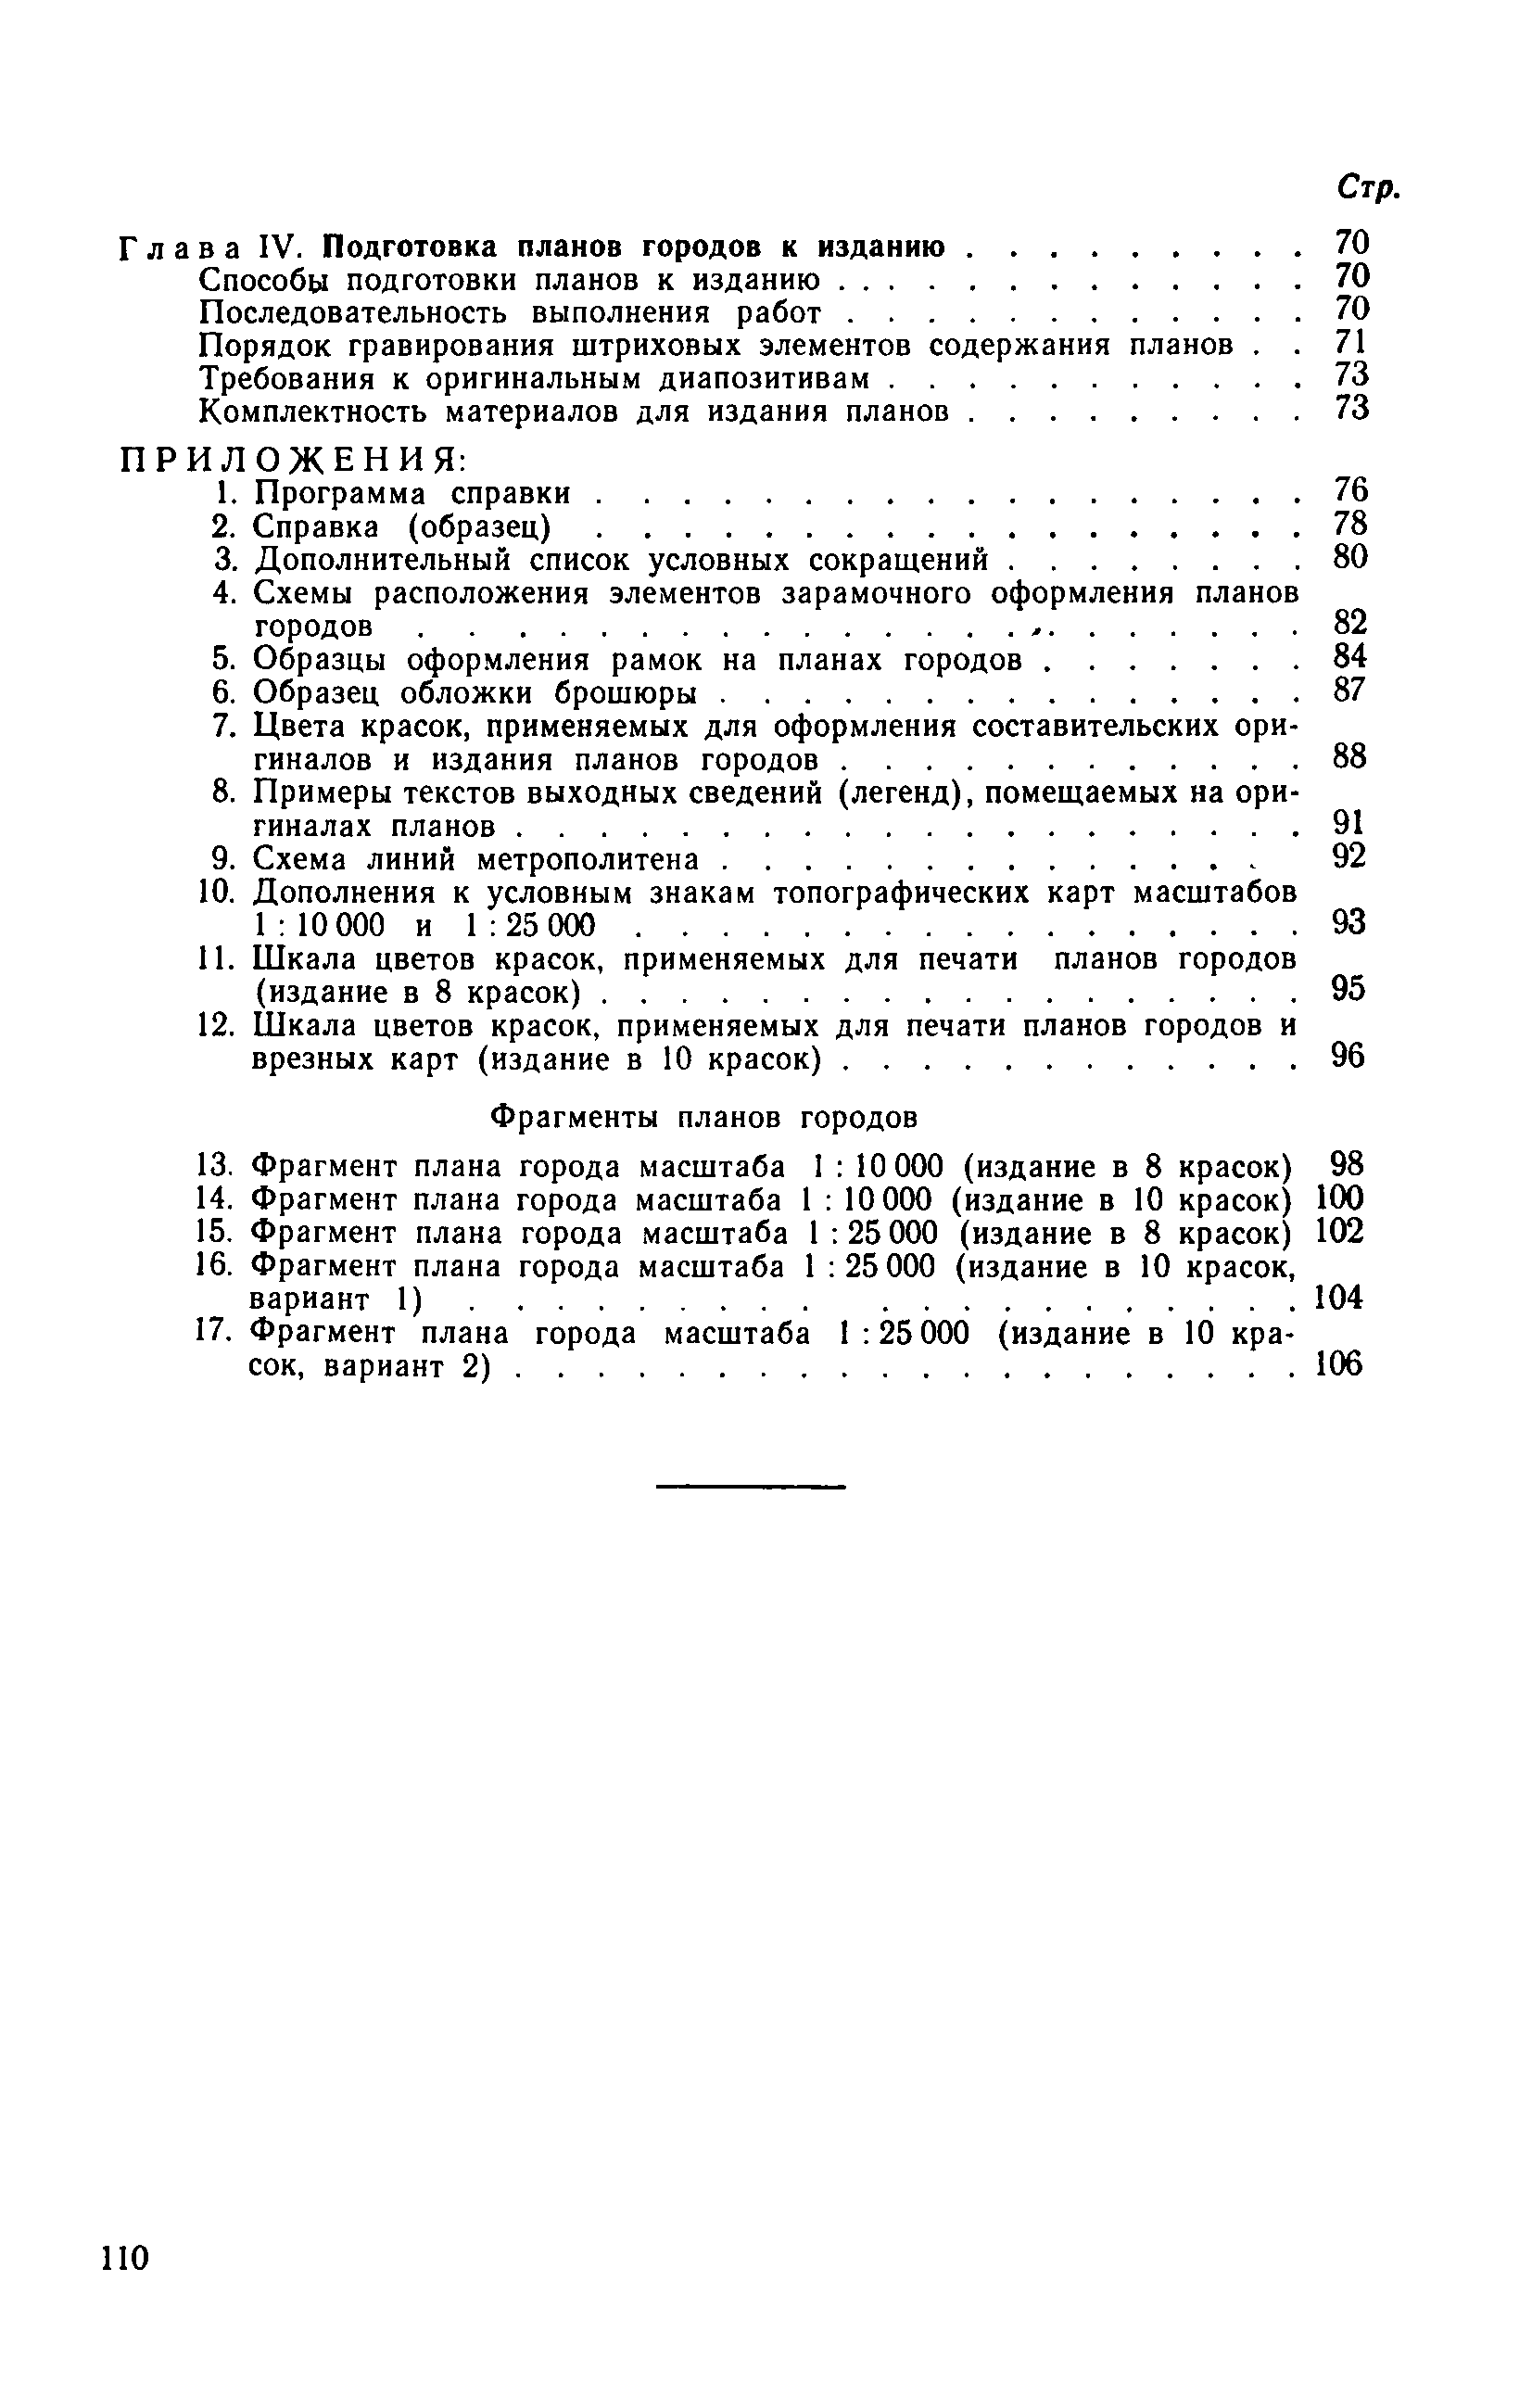 ГКИНП 05-051-77